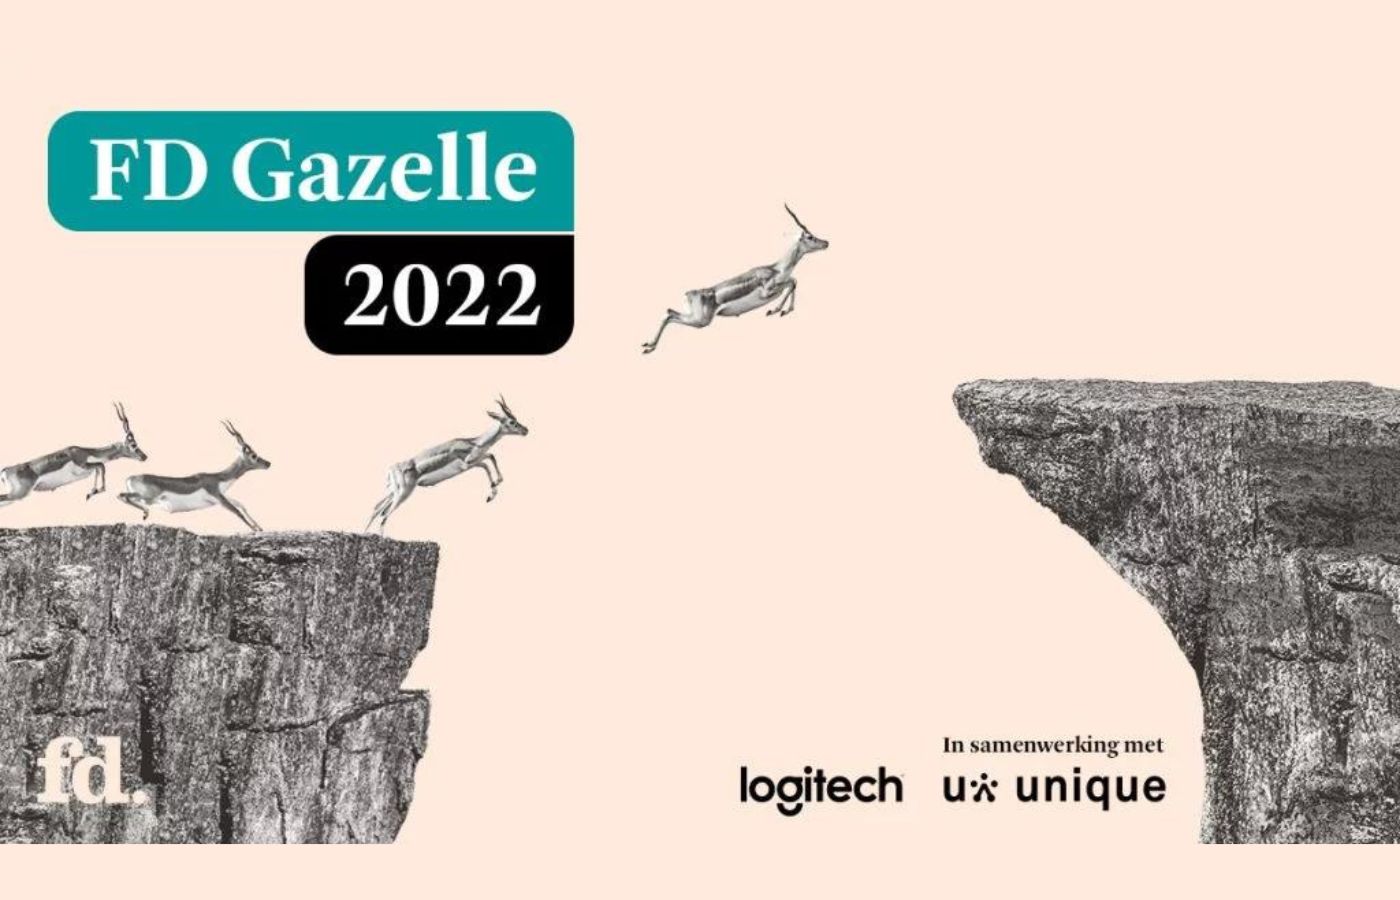 3WebApps is FD Gazelle 2022